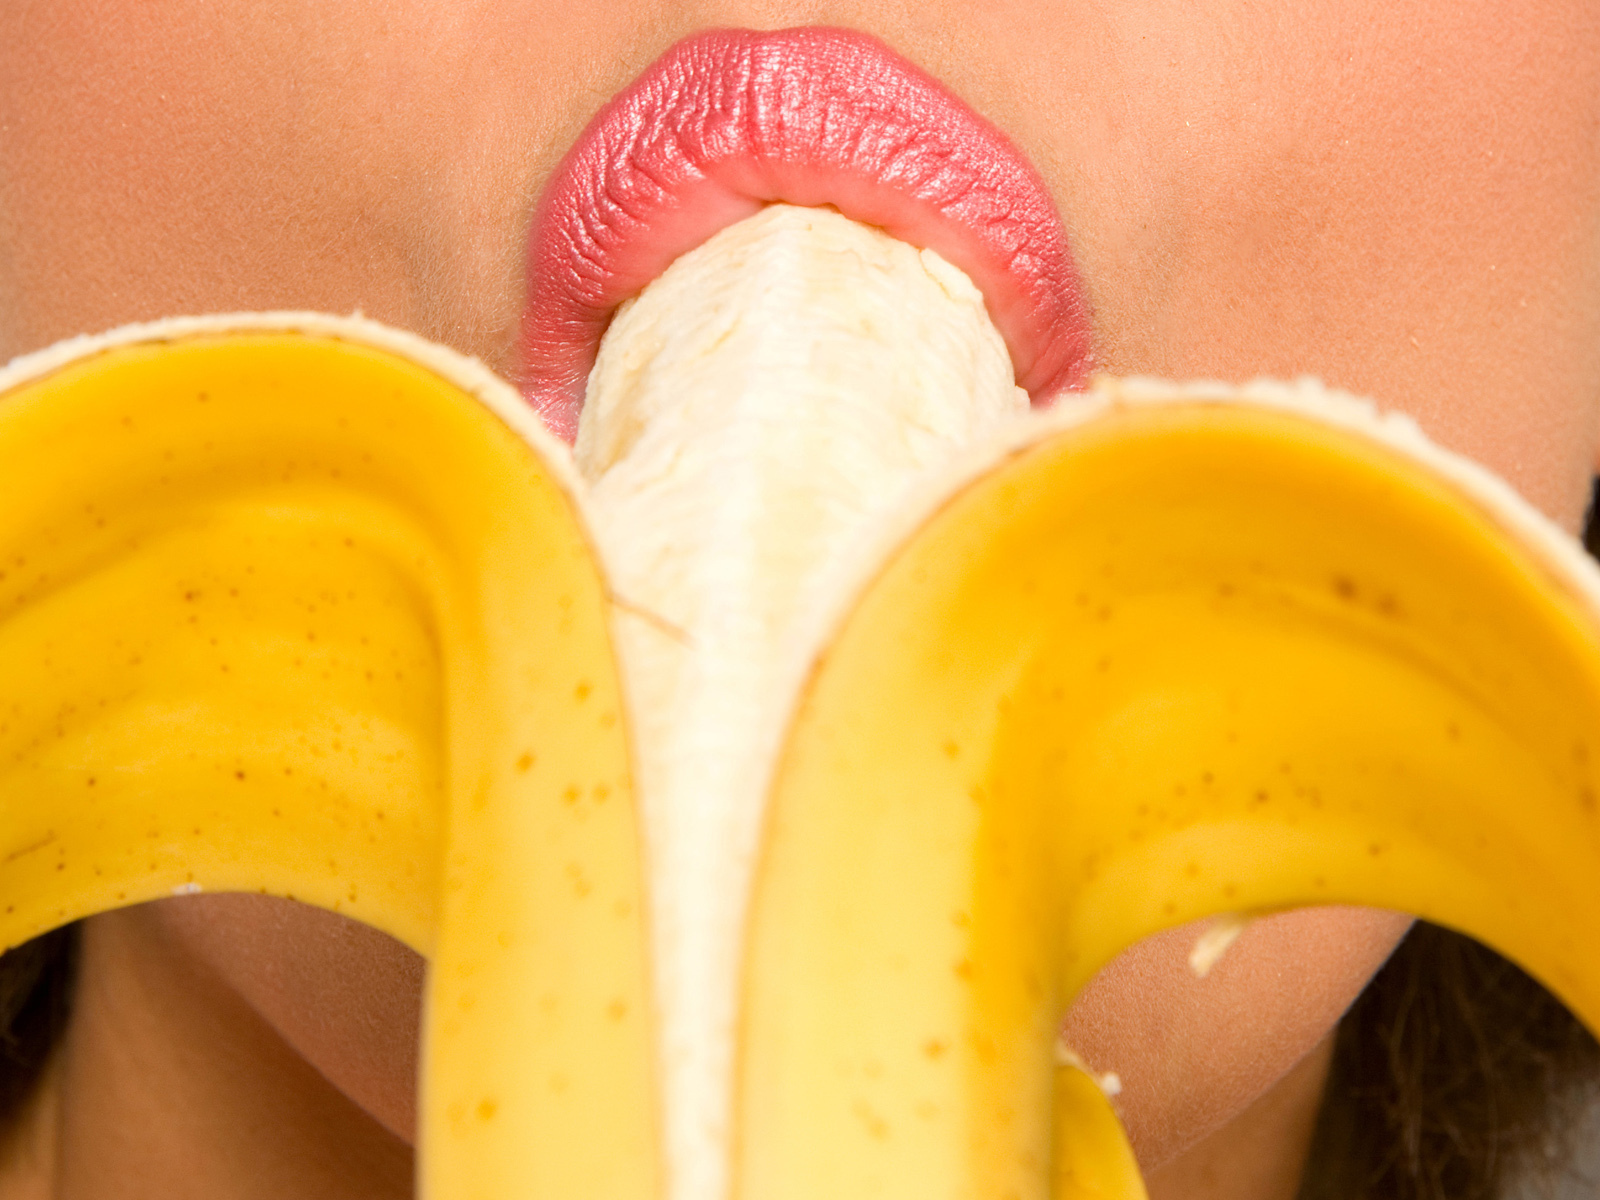 Трахает искусственную вагину бананом